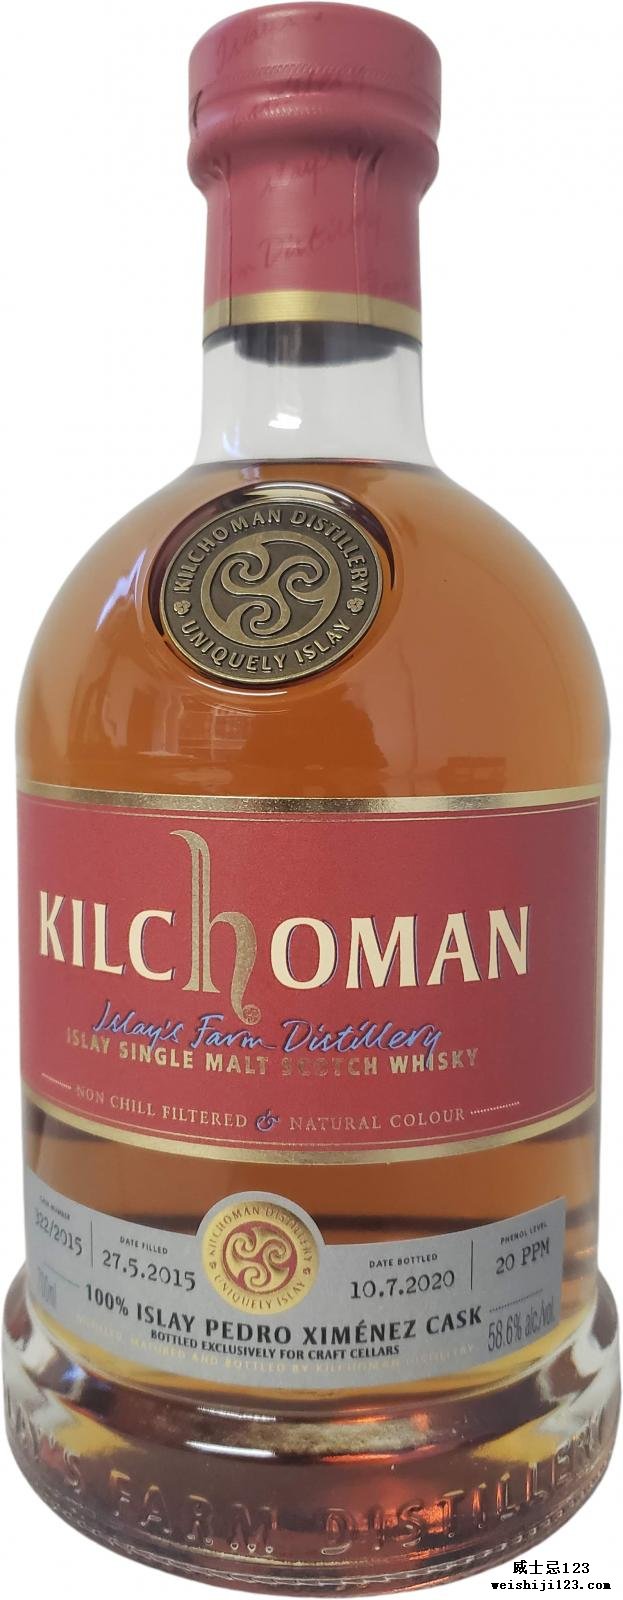 Kilchoman 2015